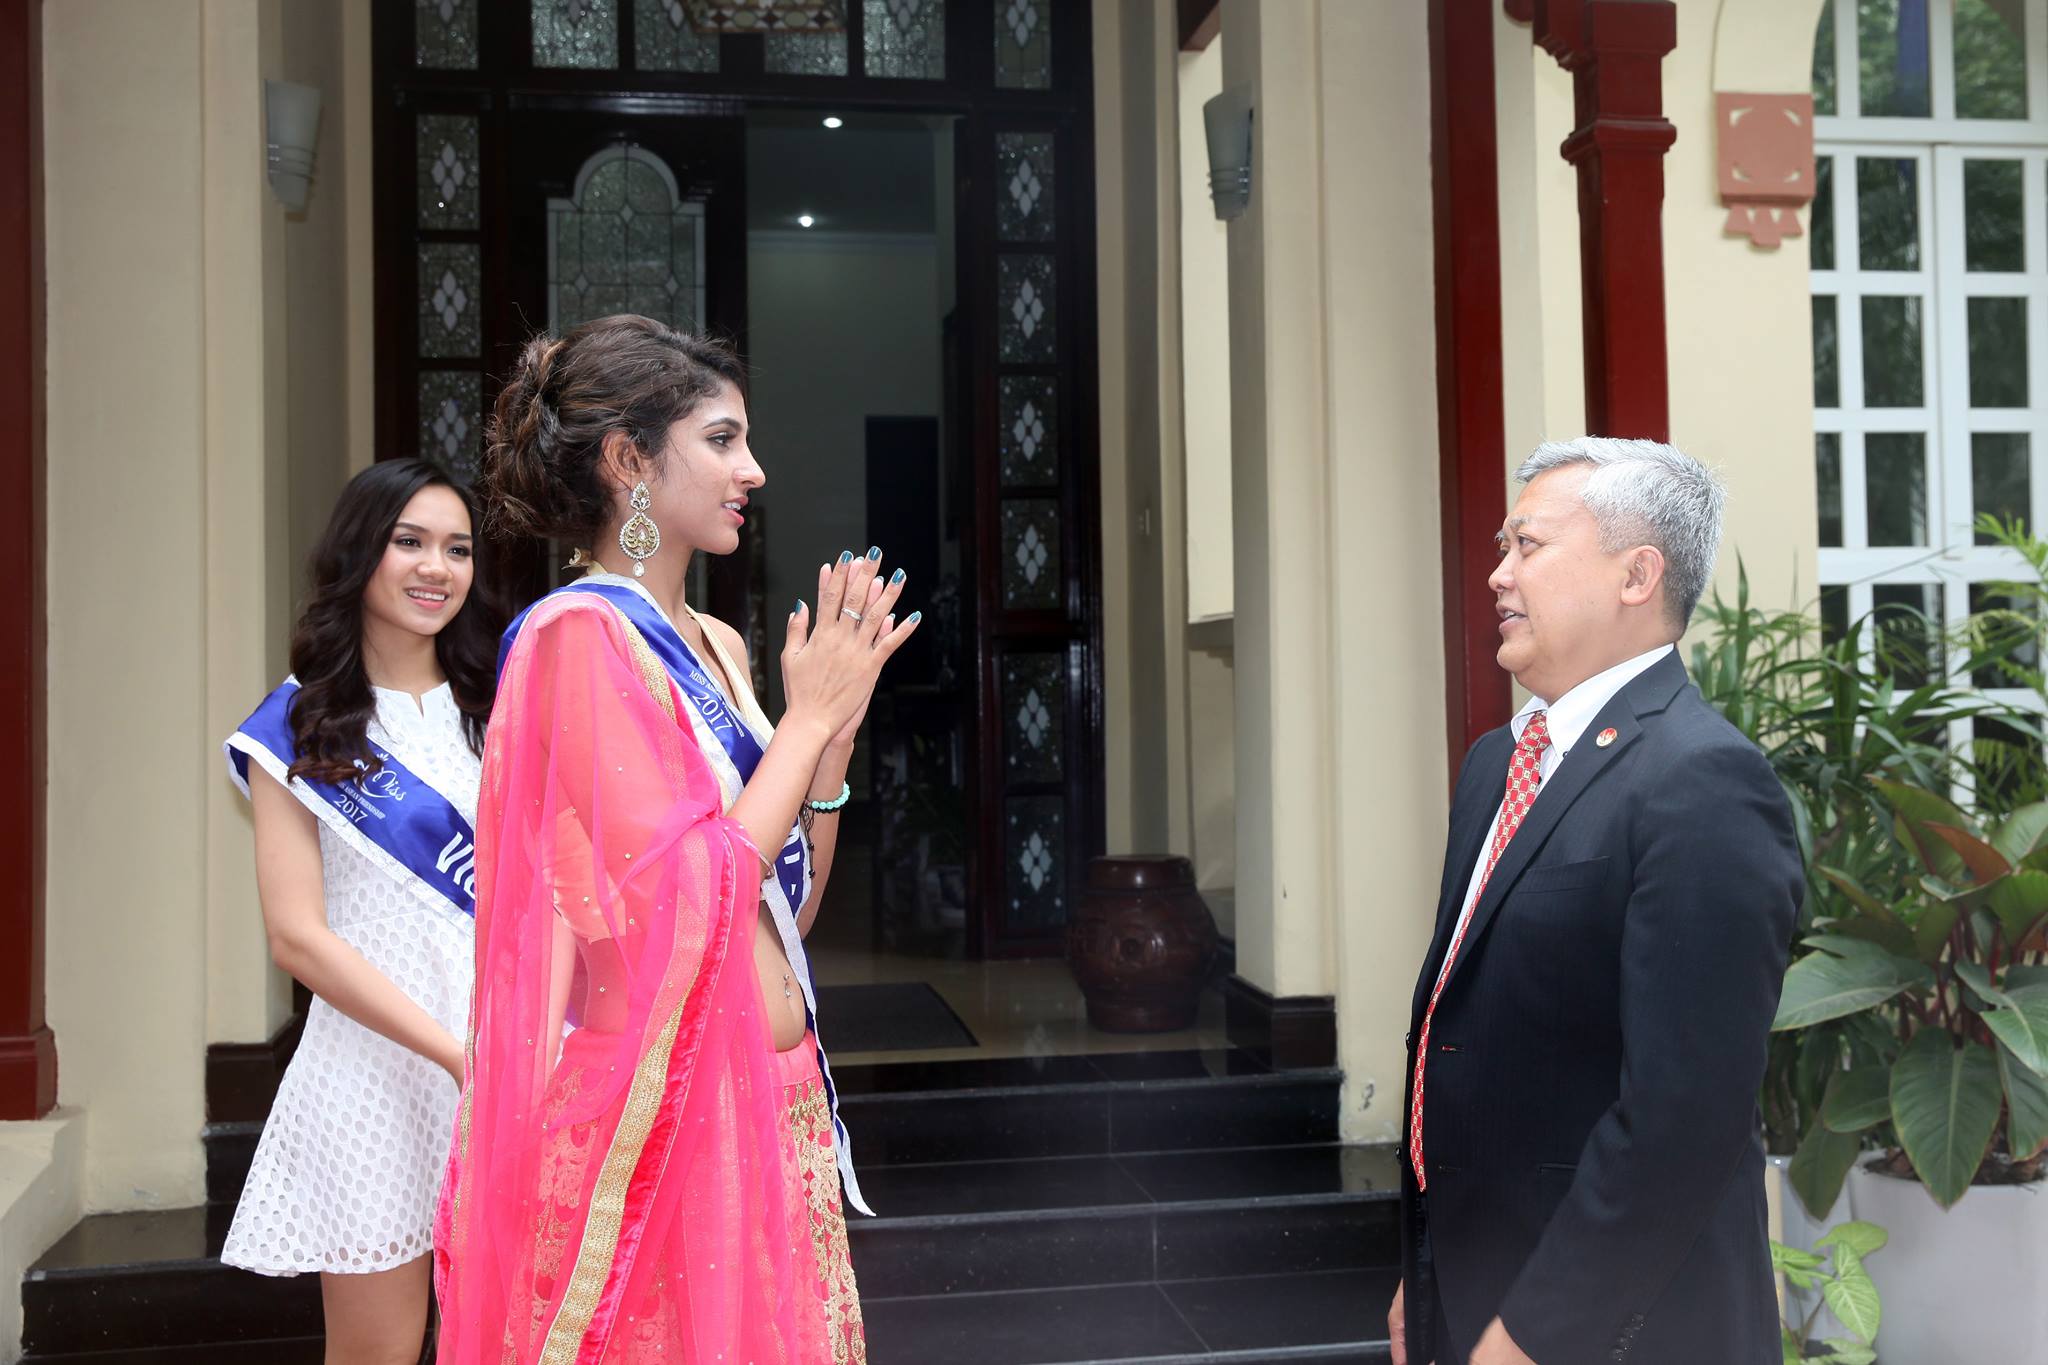 Ngài Ibnu Hadi chúc mừng người đẹp Tinaprit Kaur Dillon Balwant Singh đến từ Malaysia - Top 5 và là Người đẹp thân thiện của Miss ASEAN Frendship 2017